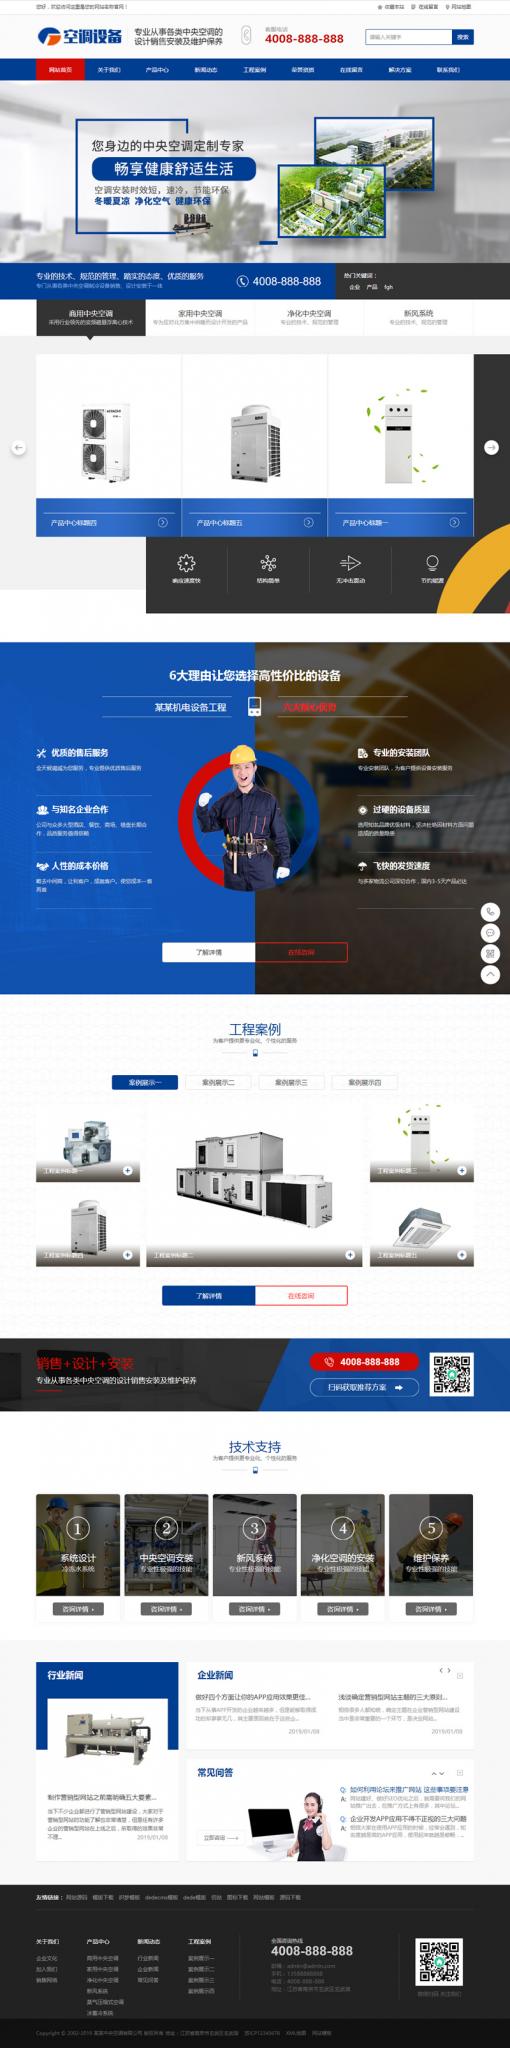 蓝色营销型中央空调设备系统类网站源码 大型制冷设备网站织梦模板